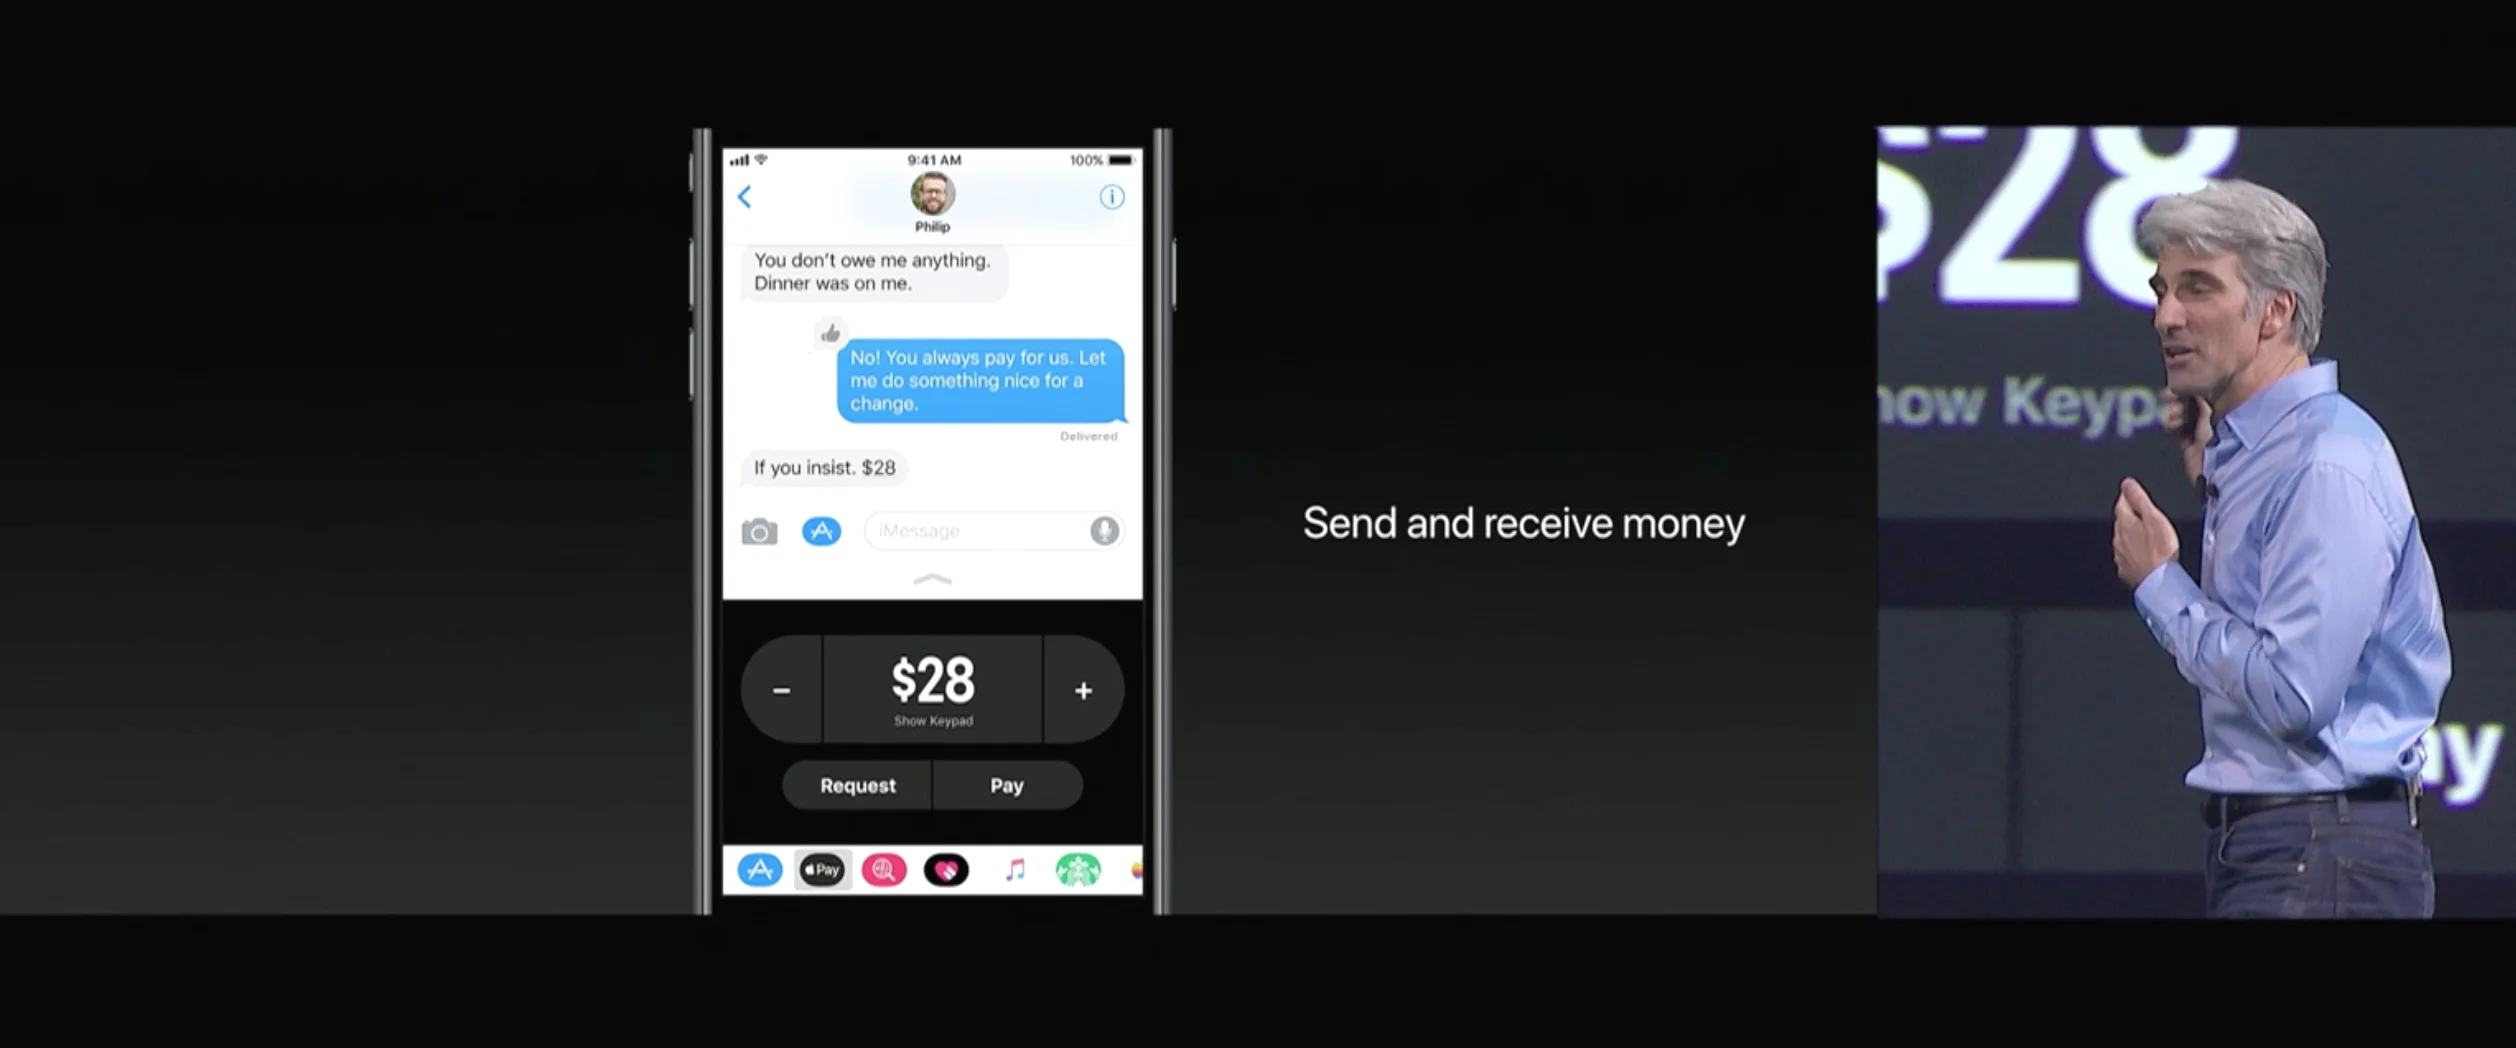 Apple позволит пересылать деньги между пользователями iOS 11 - фото 1